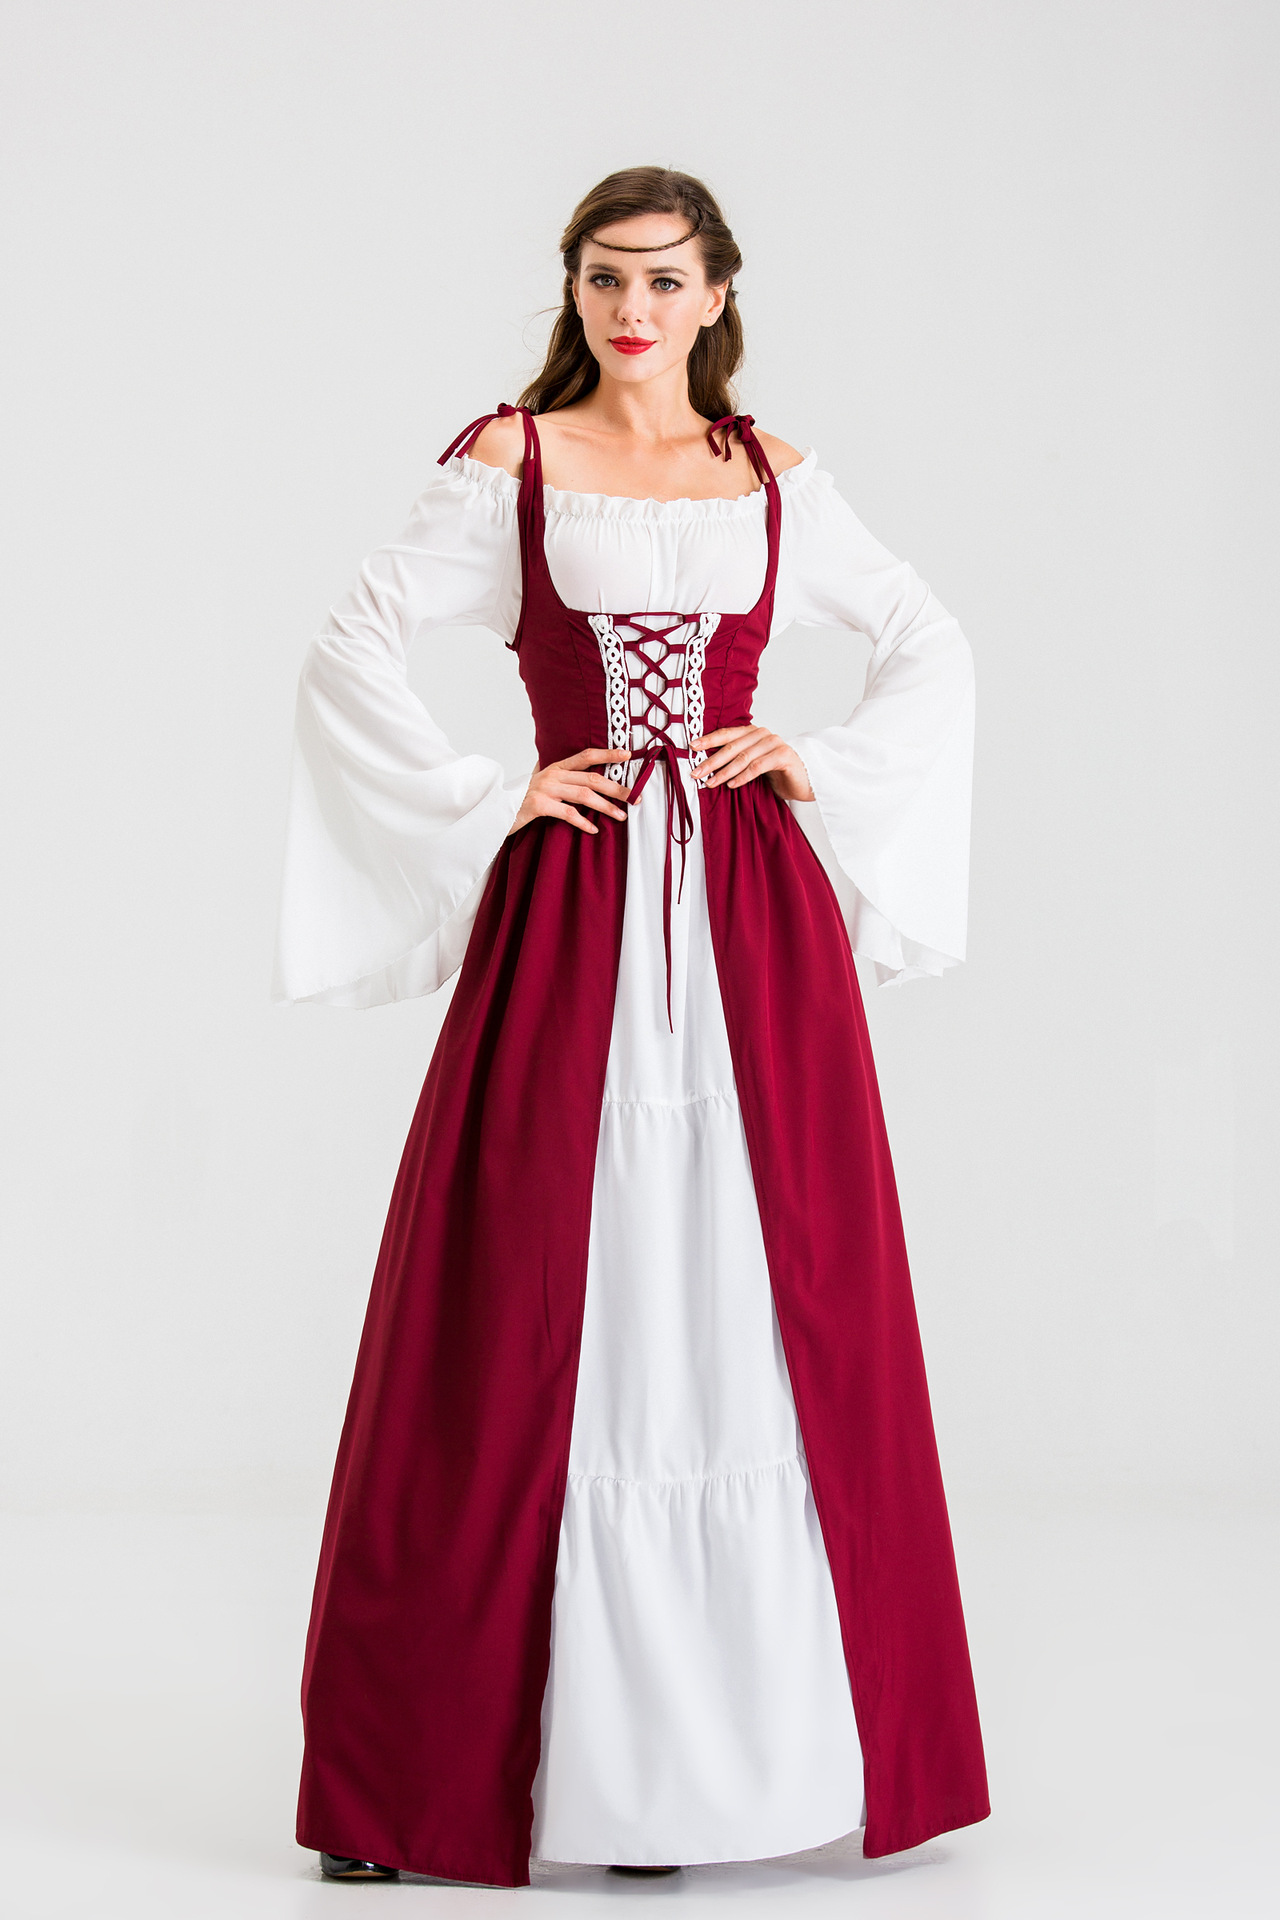 送帽子复古欧洲宫廷服装 蕾丝洋装裙 皇后服装长裙万圣节舞会女王-阿里巴巴